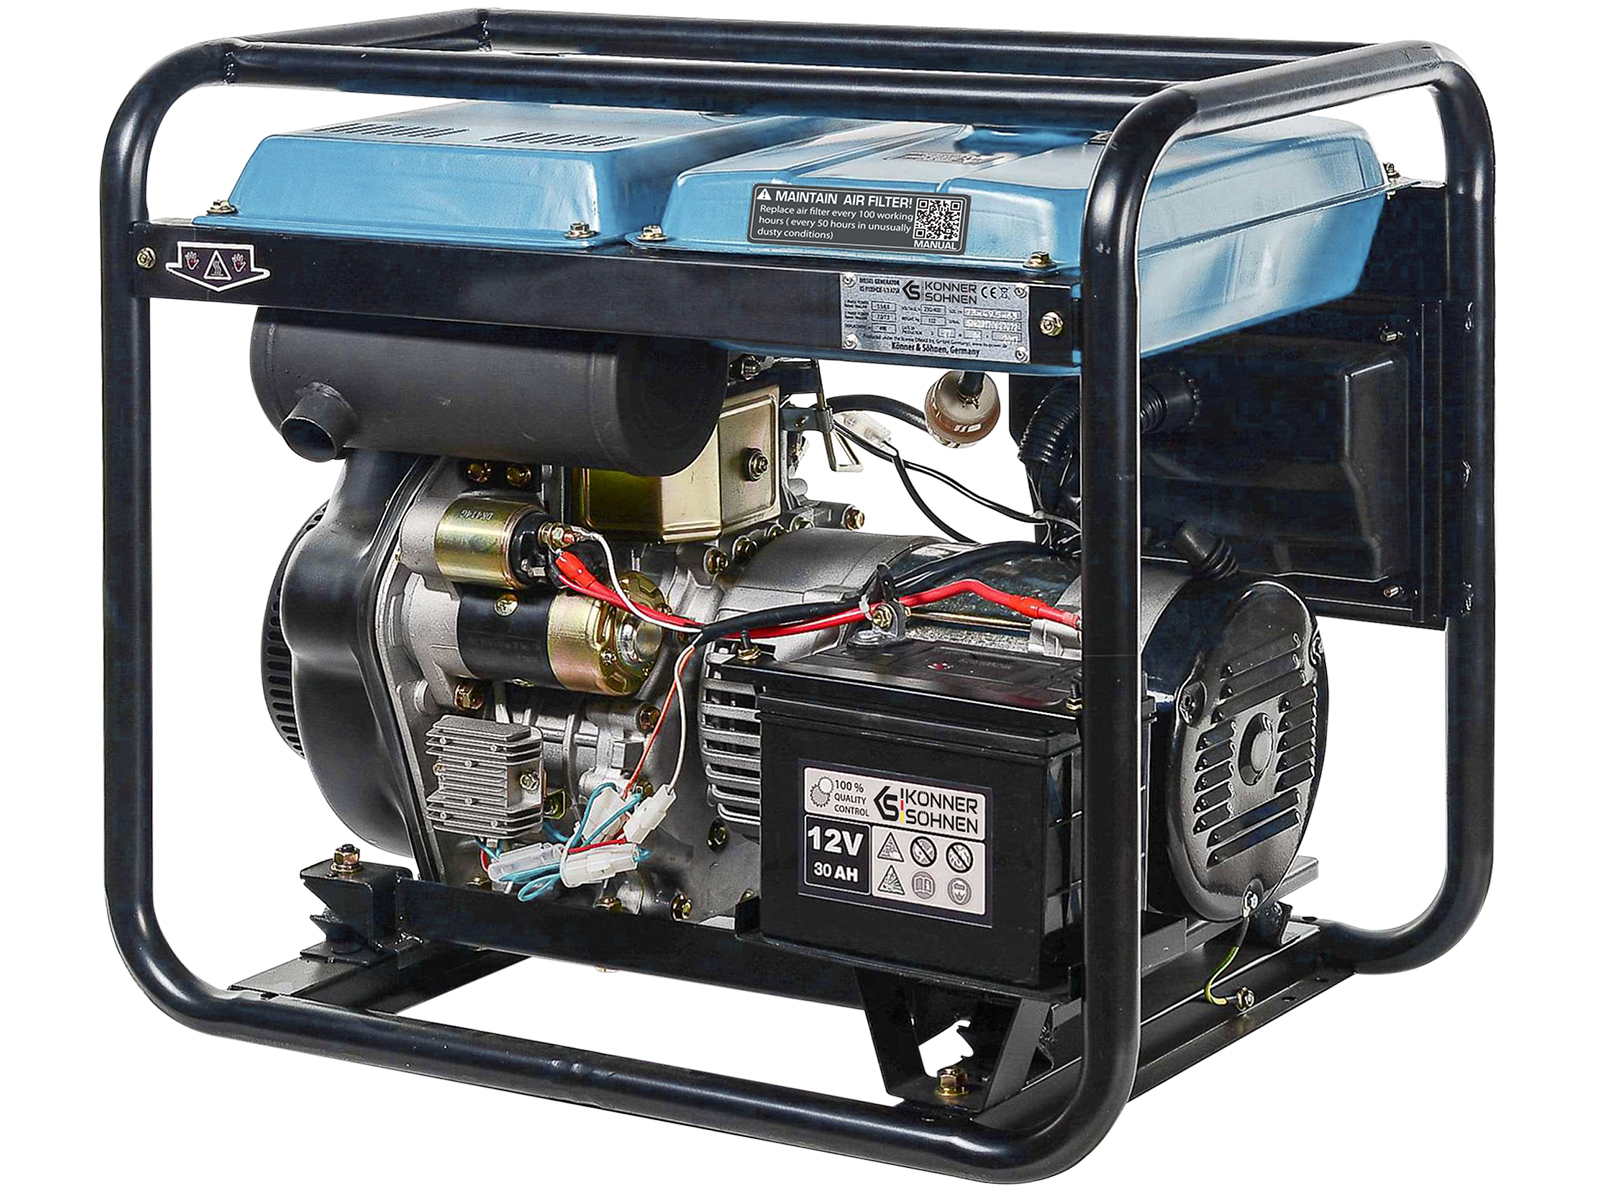 Diesel generator "Könner & Söhnen" KS 8100HDE-1/3 ATSR (EURO V)